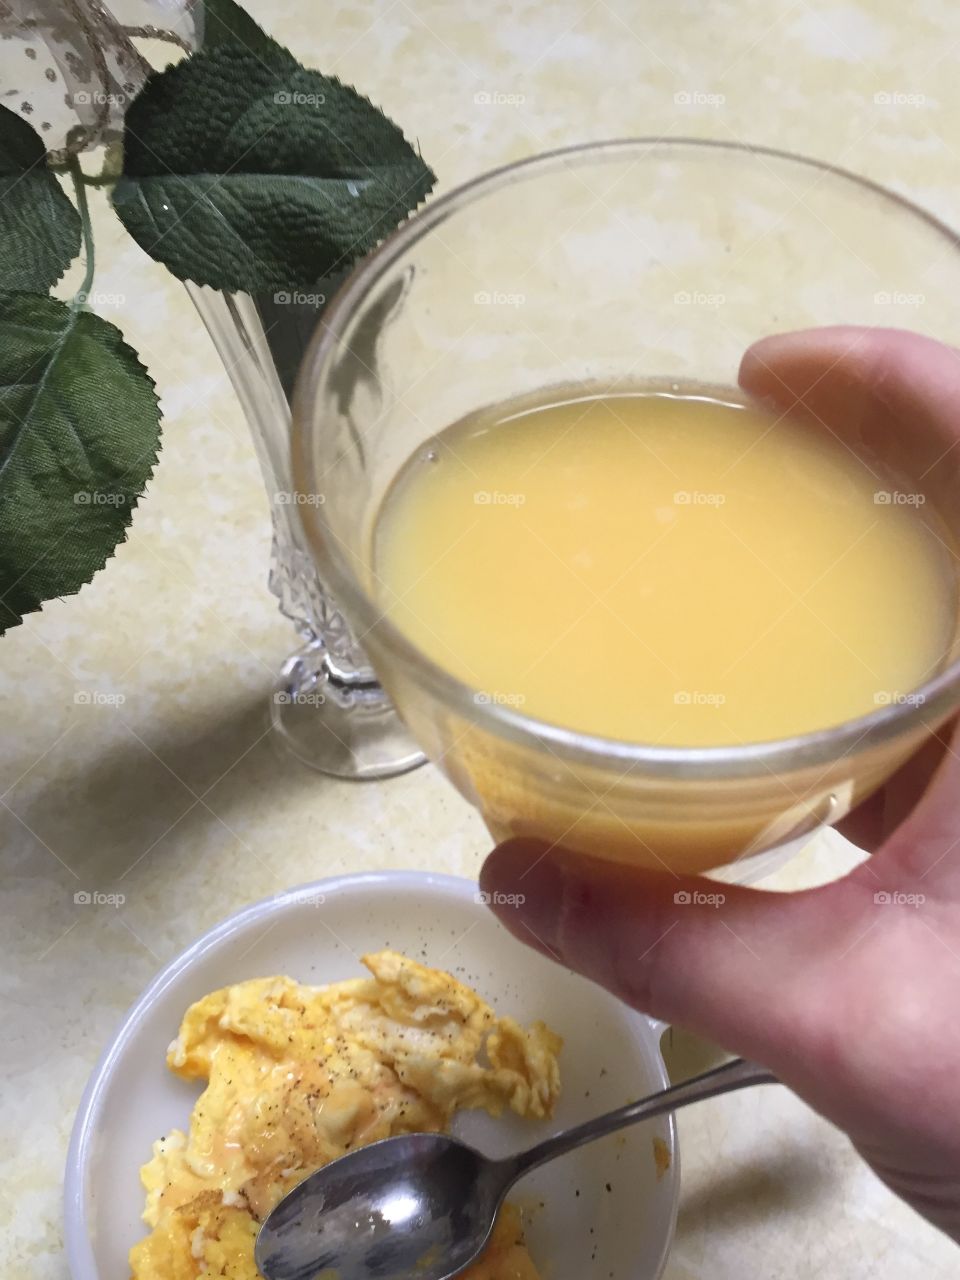 Morning ritual drinking orange juice